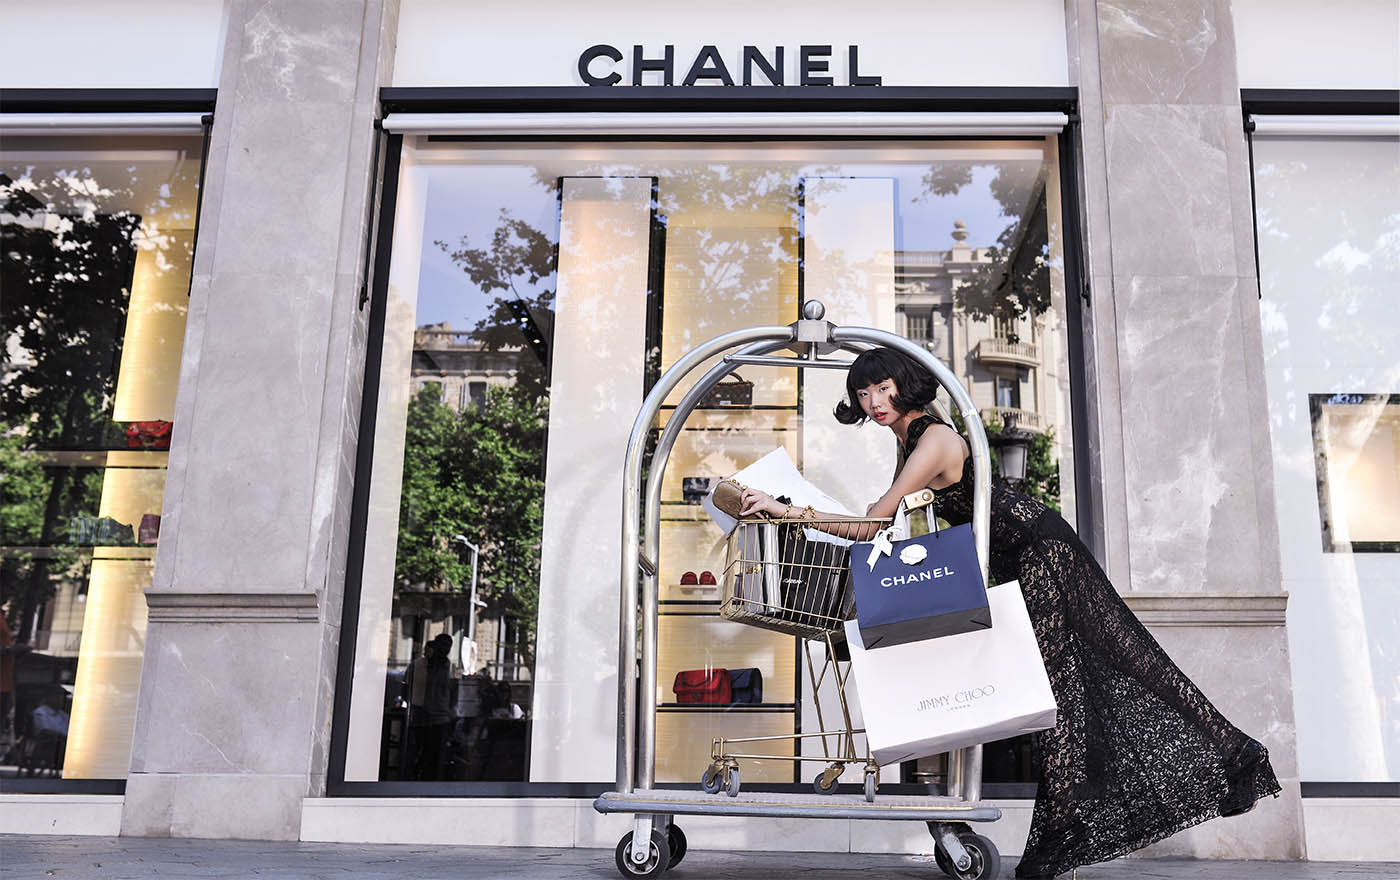 Escaparate de una tienda Chanel en Barcelona